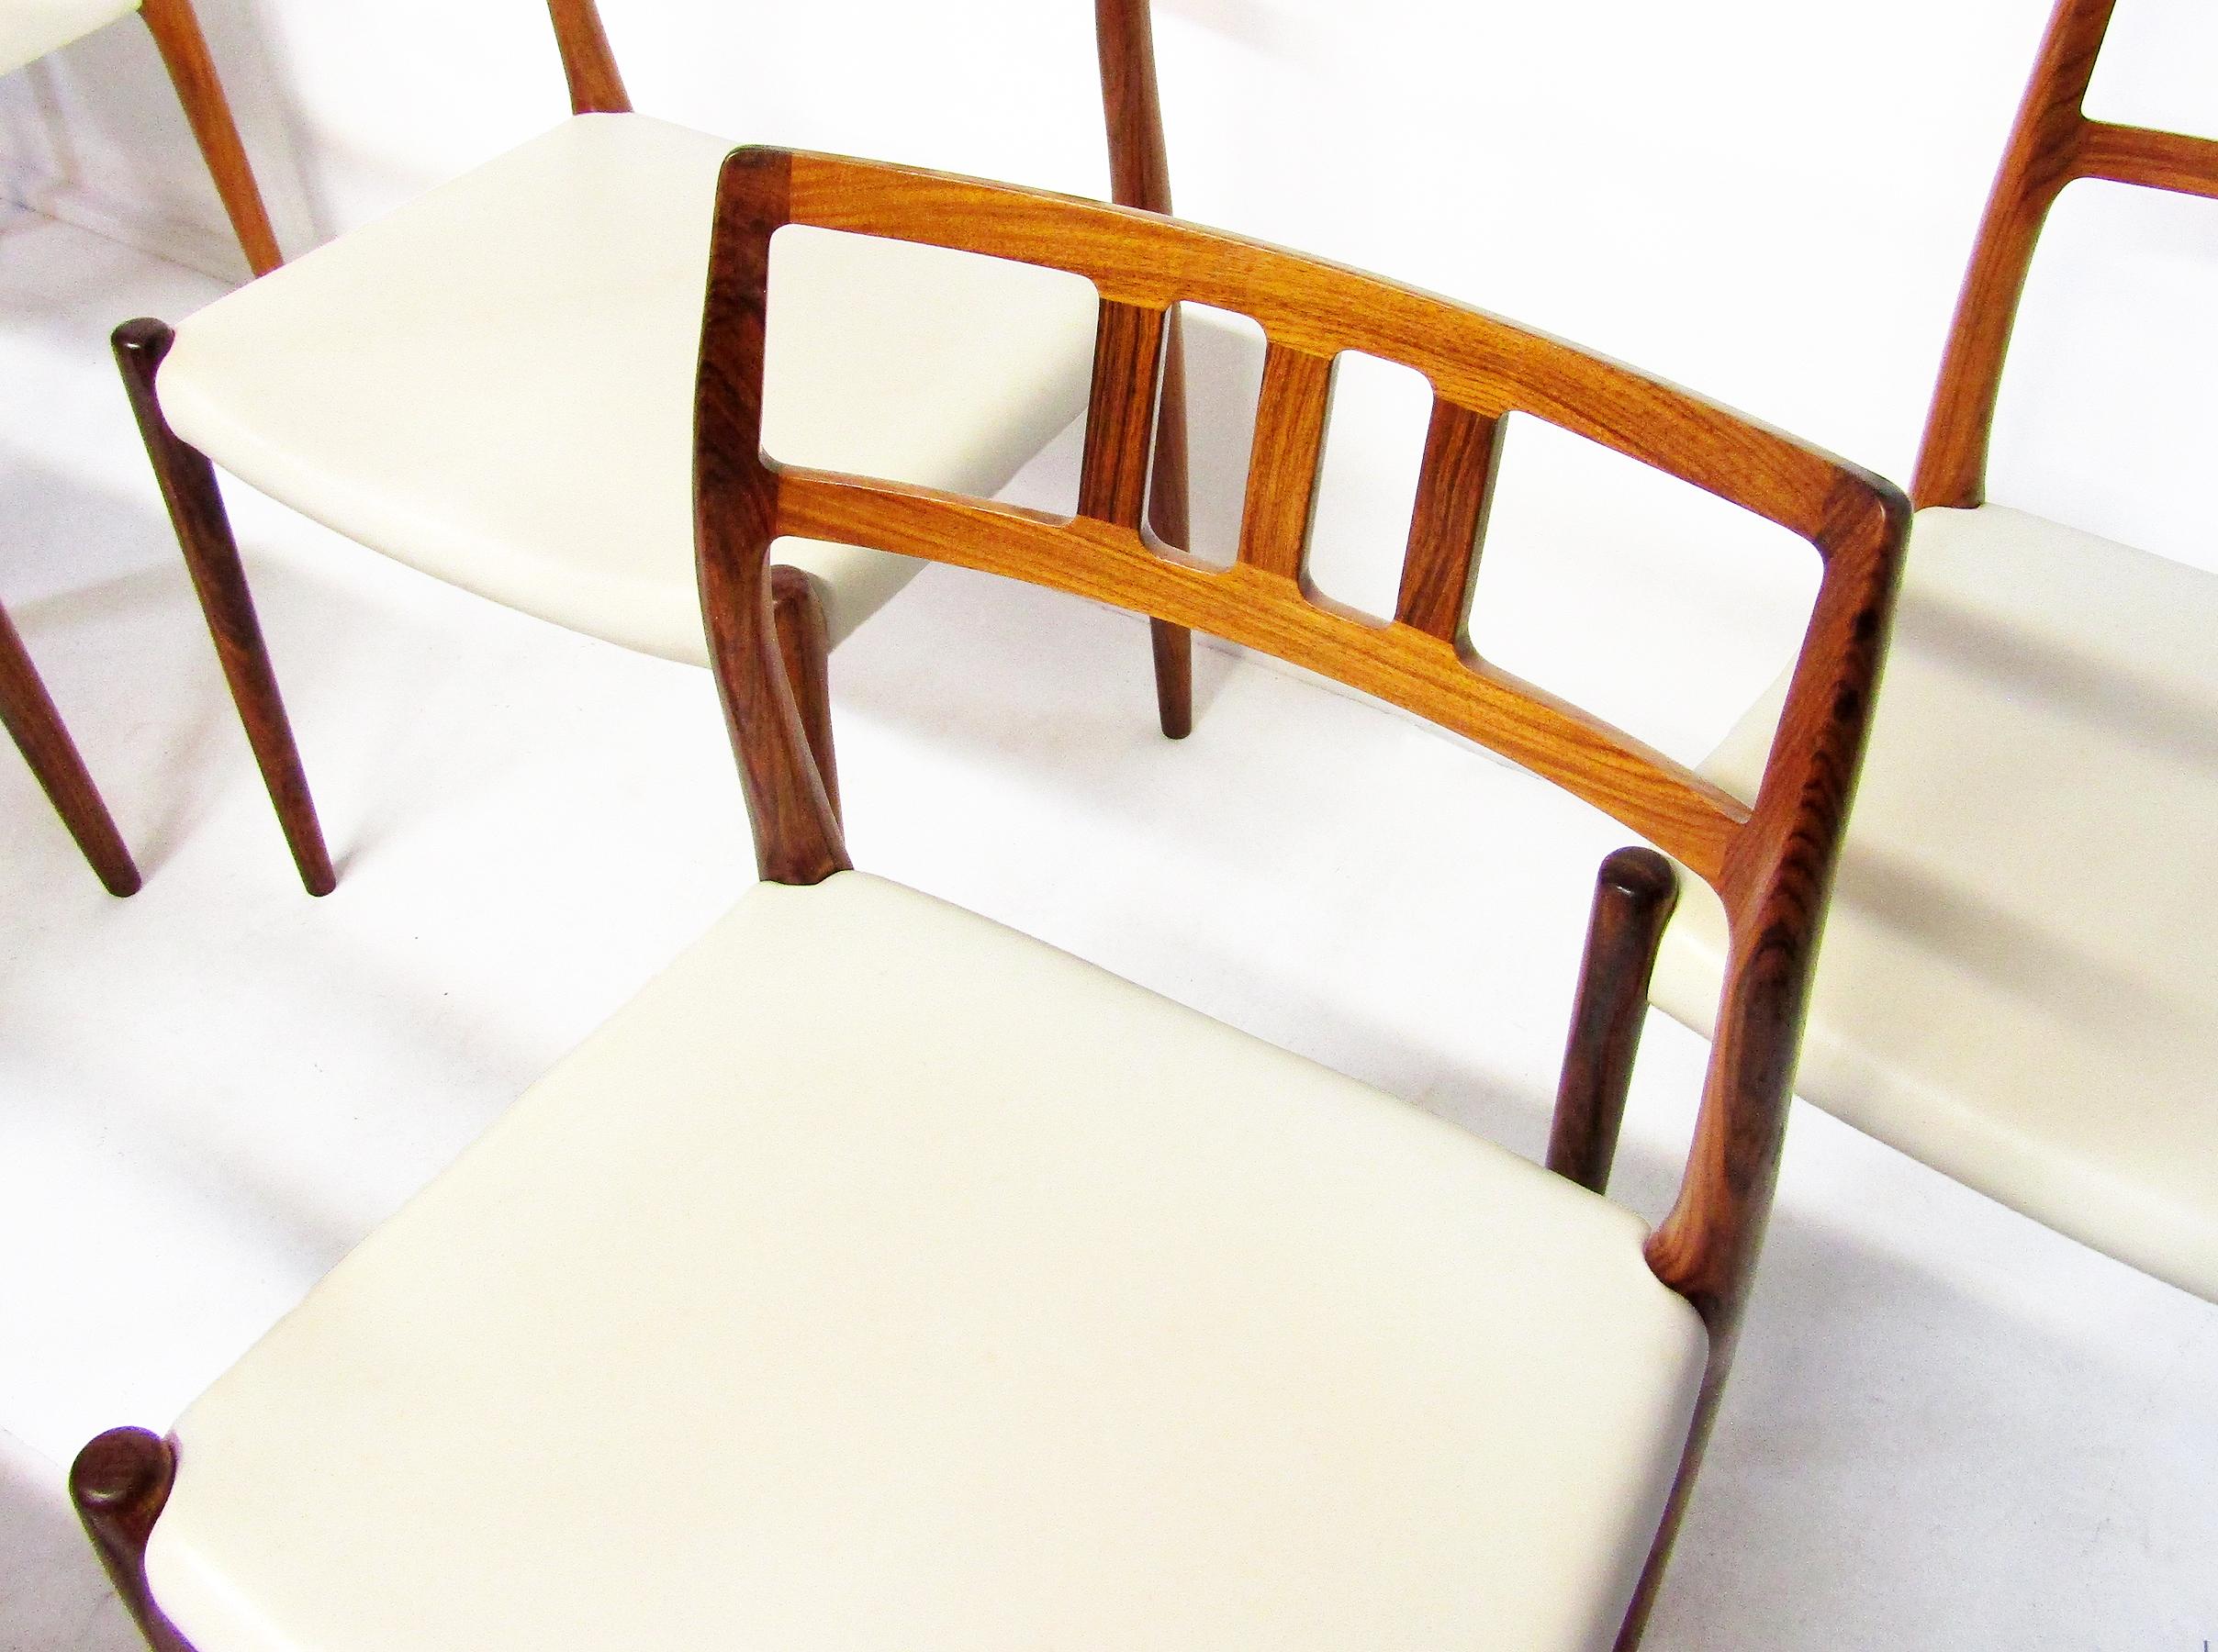 Sechs dänische Stühle „Modell 79“ aus Palisanderholz von Niels Moller, um 1960 (20. Jahrhundert)